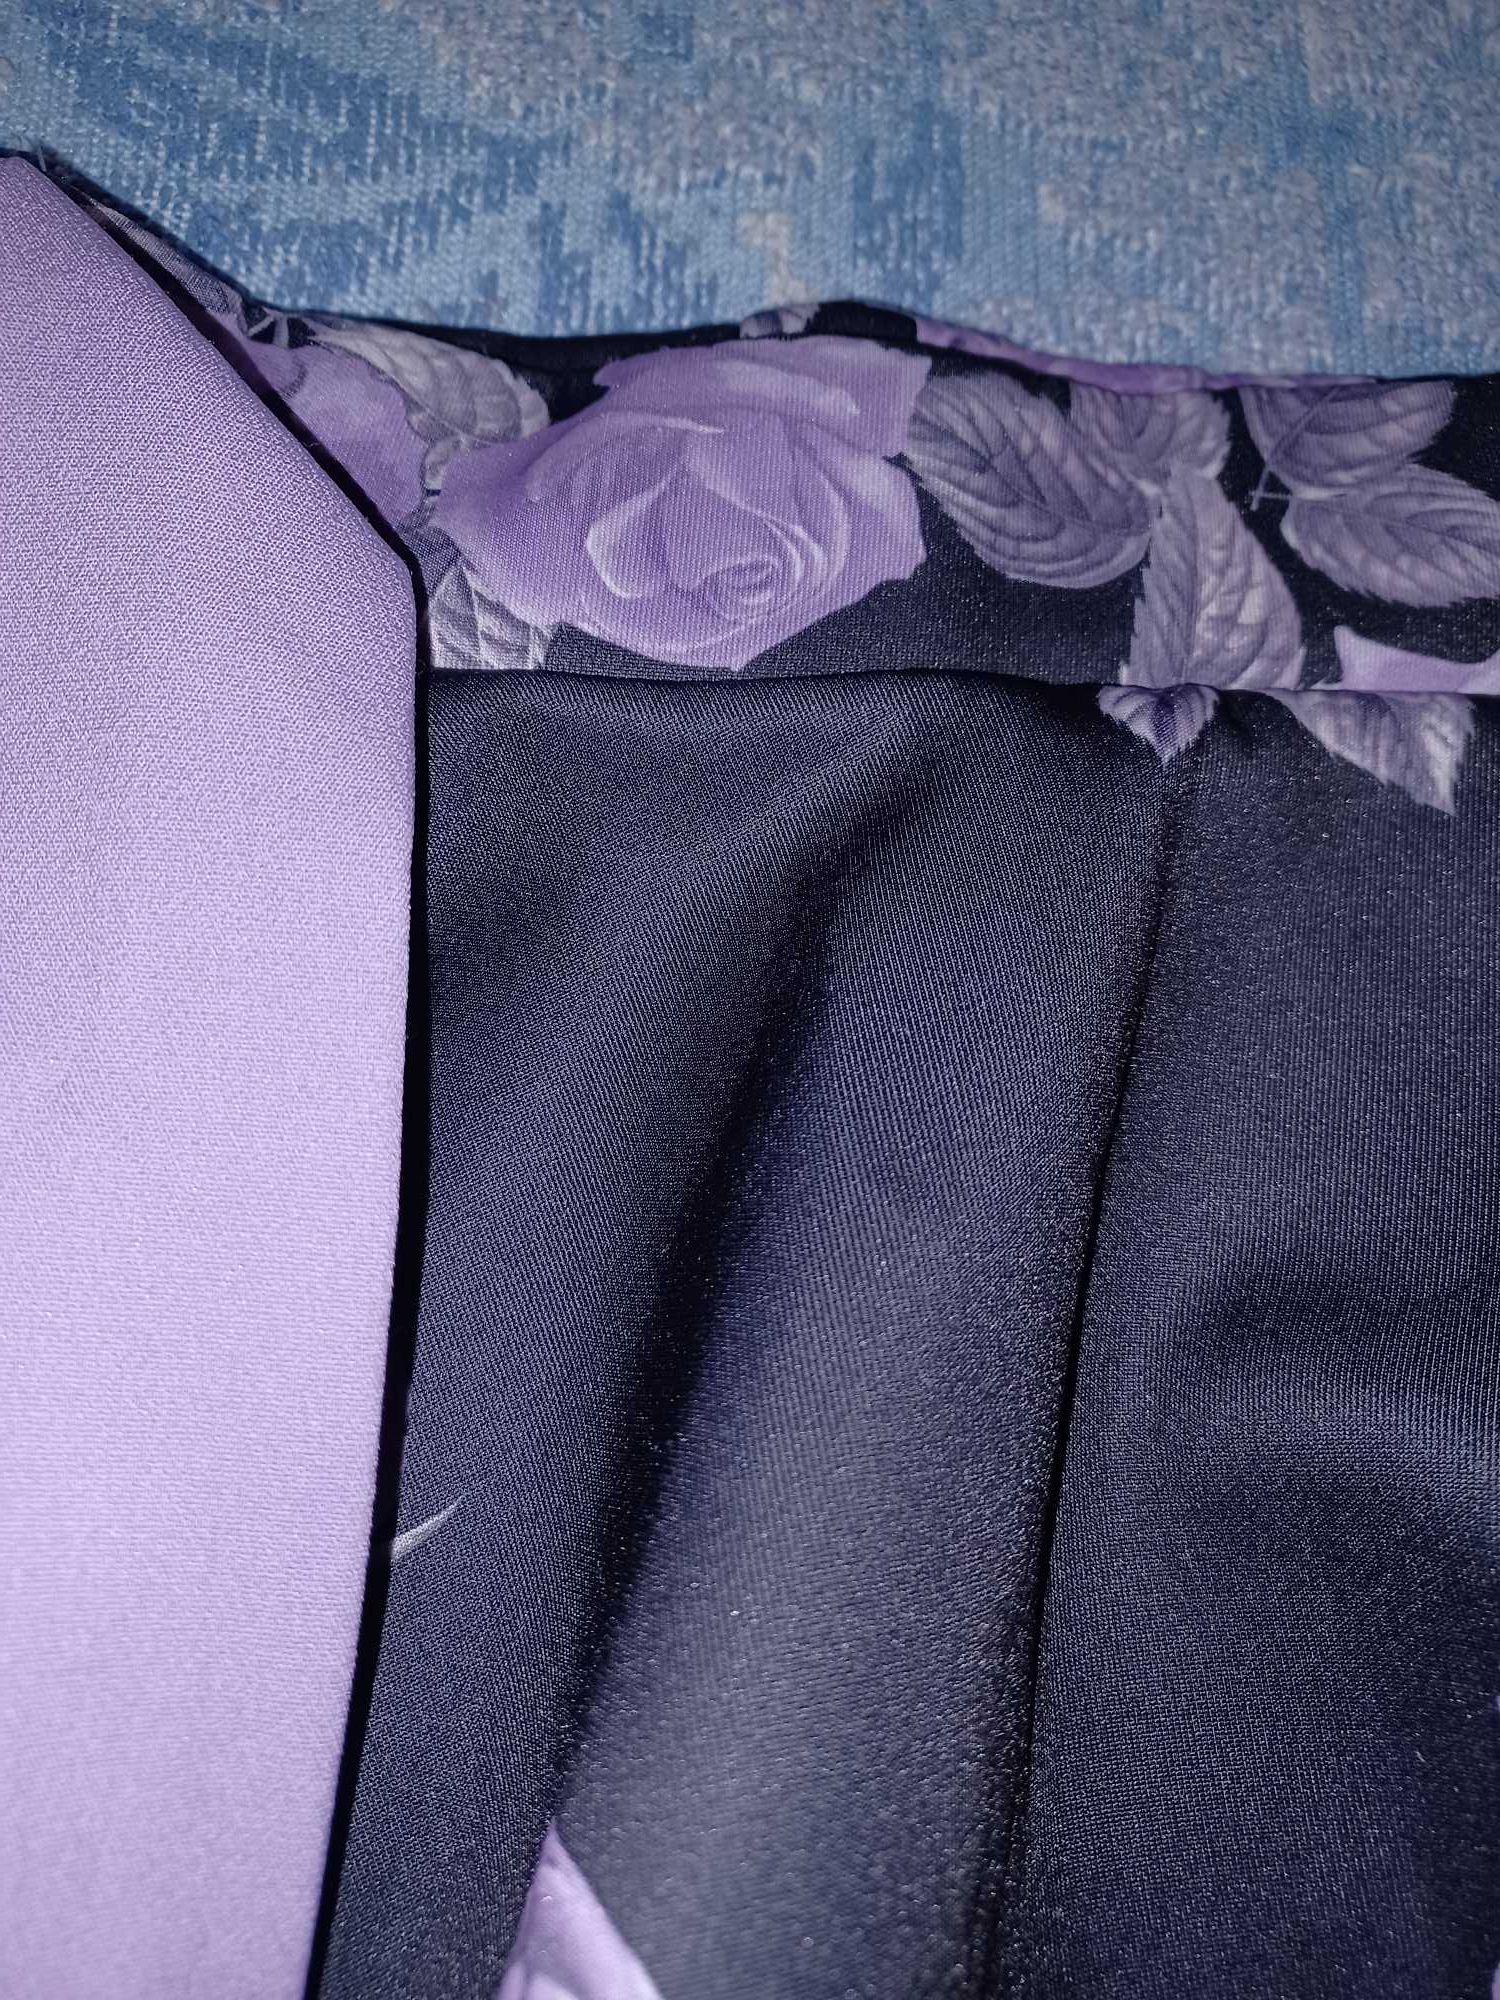 Spódnica fioletowo- czarna dla dziewczynki